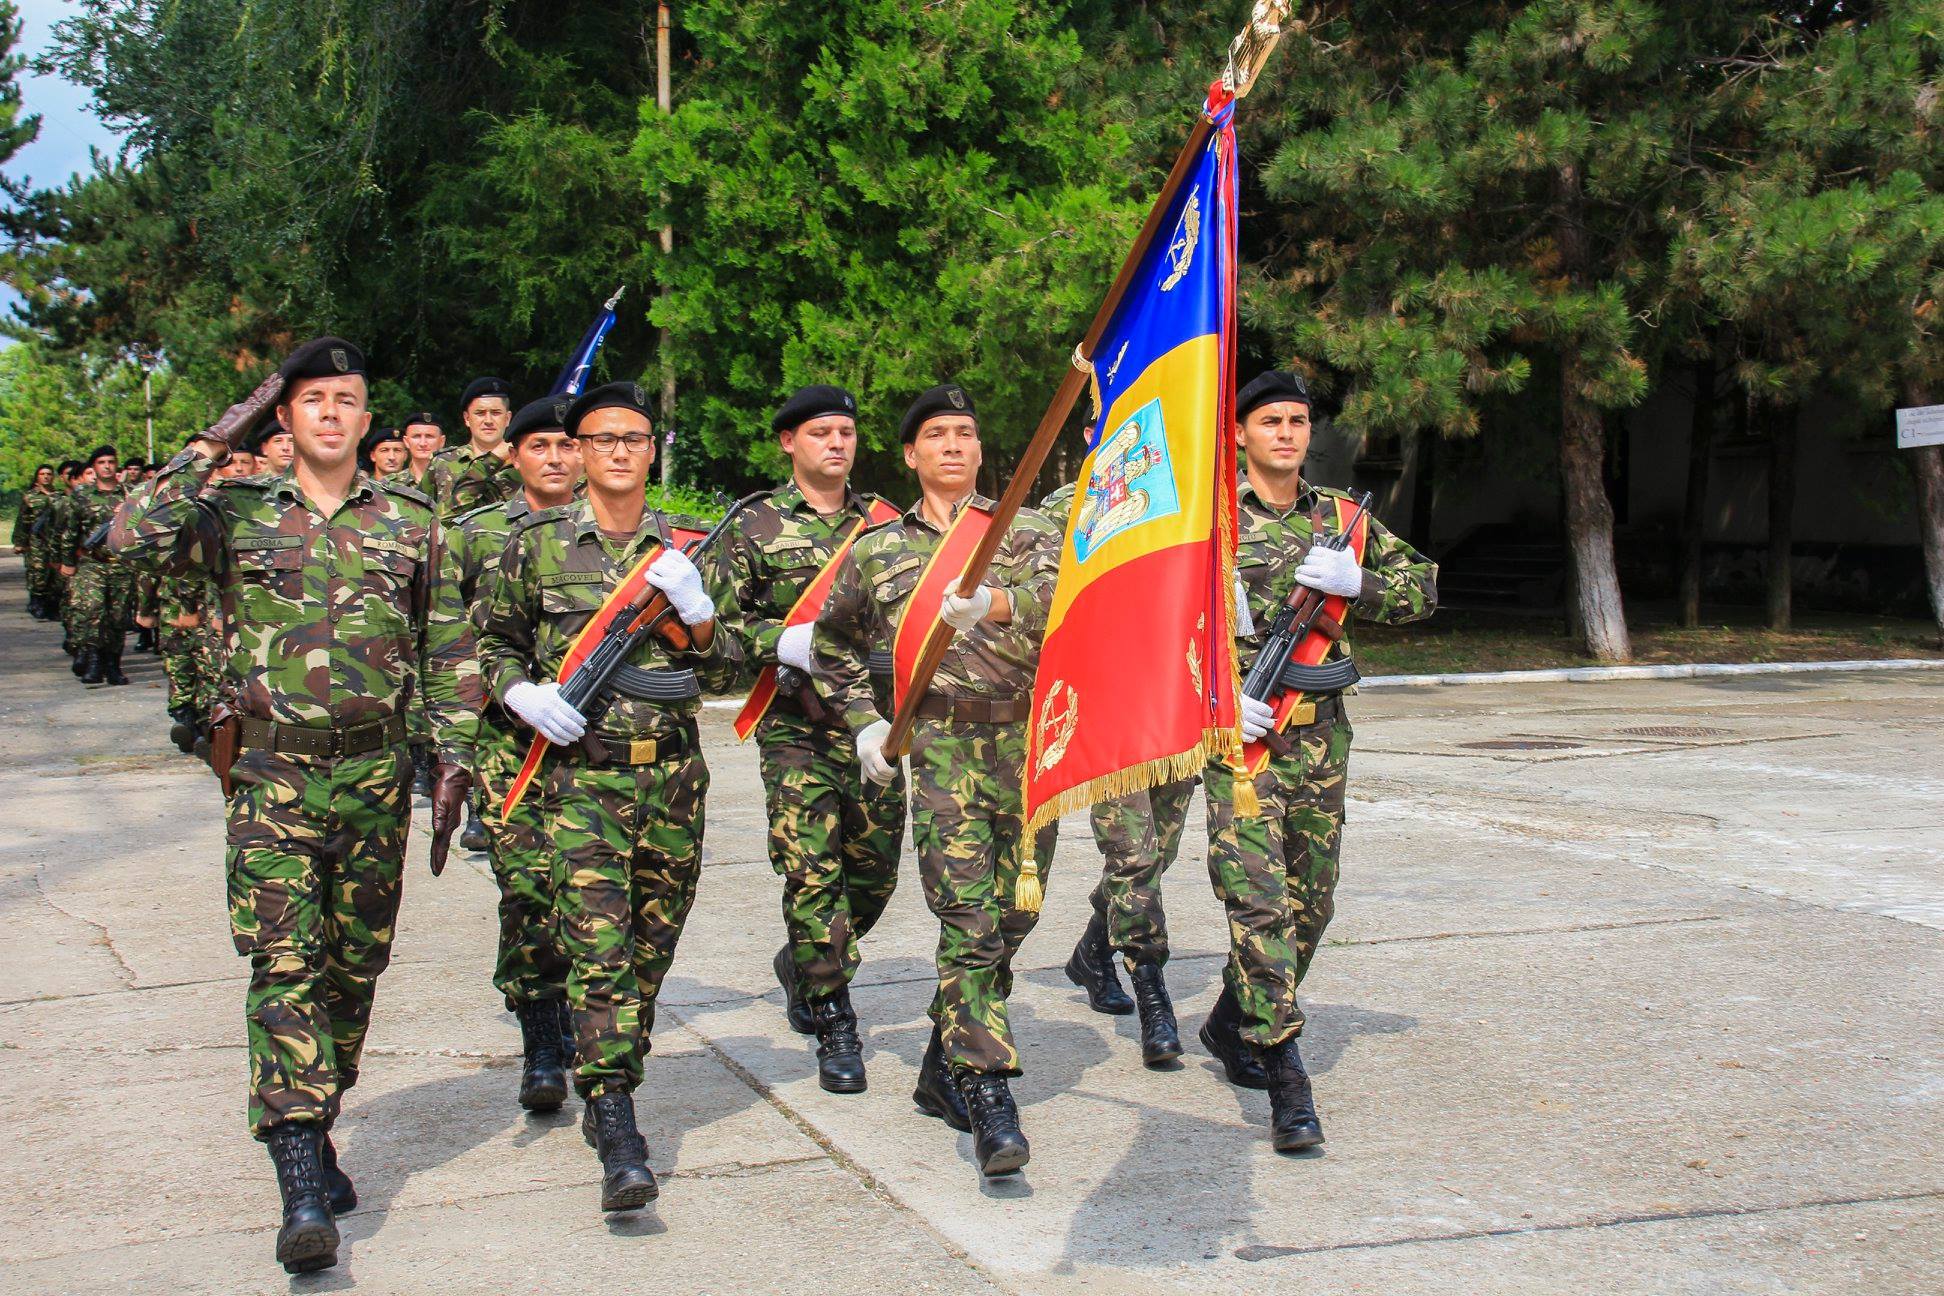 Tulcea celebrează 140 de ani de la înființarea Diviziei Active Dobrogea